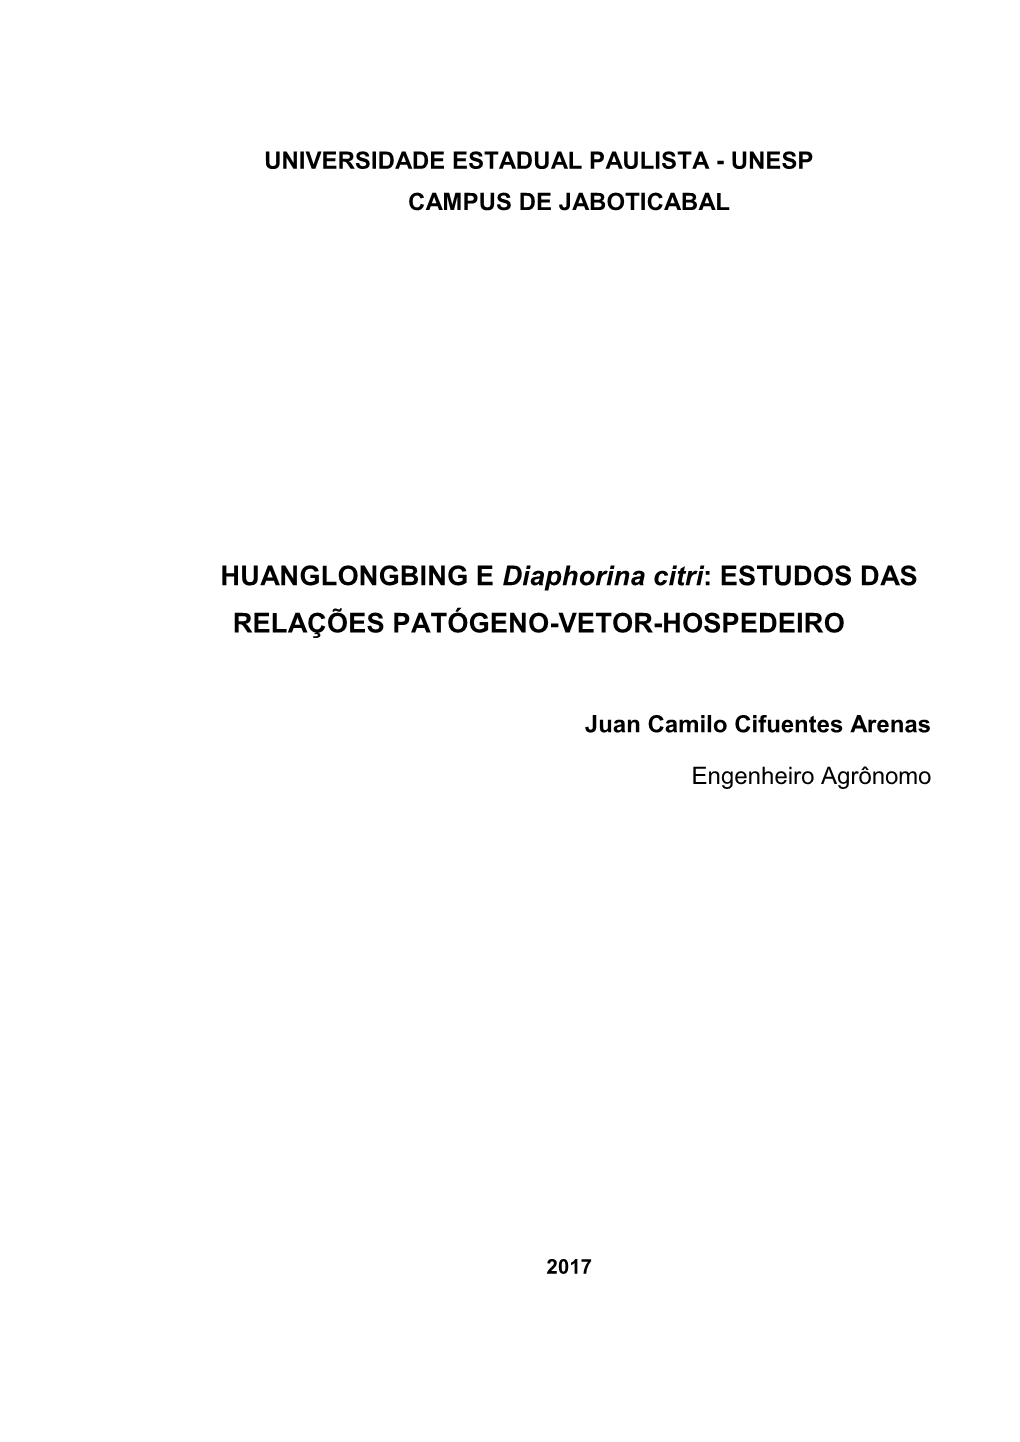 HUANGLONGBING E Diaphorina Citri: ESTUDOS DAS RELAÇÕES PATÓGENO-VETOR-HOSPEDEIRO